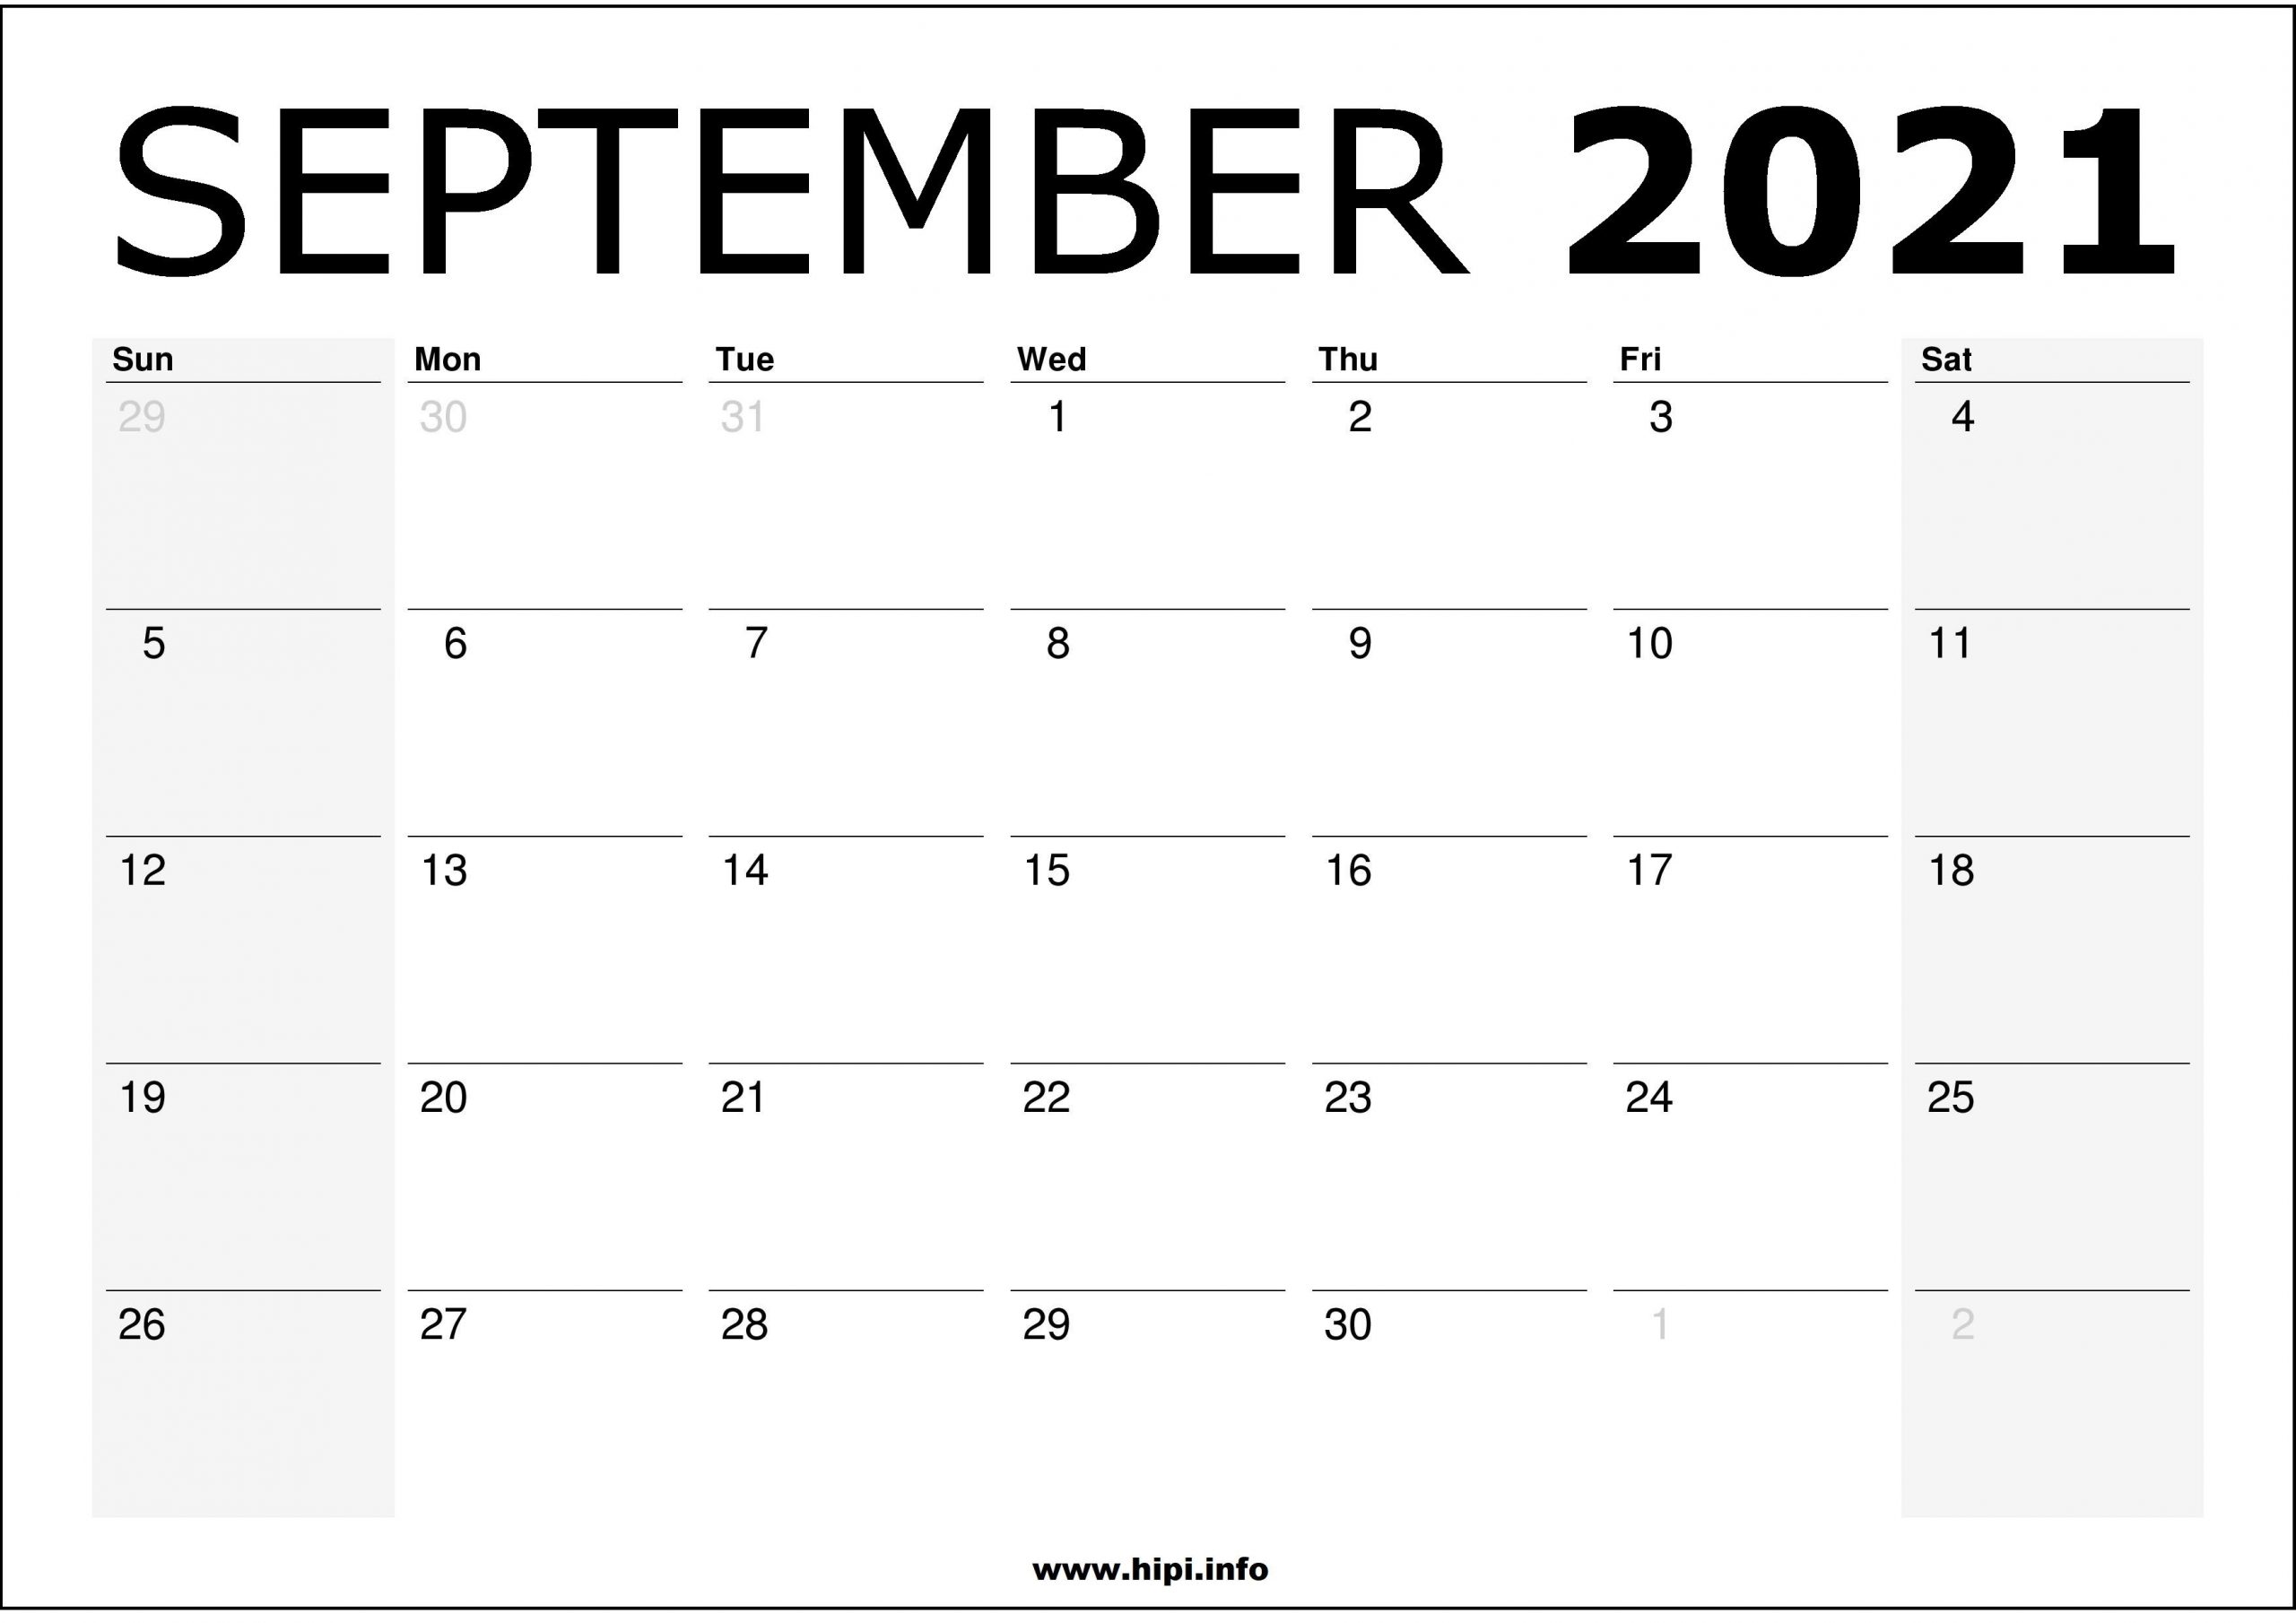 September 2021 Calendar Wallpapers - Wallpaper Cave